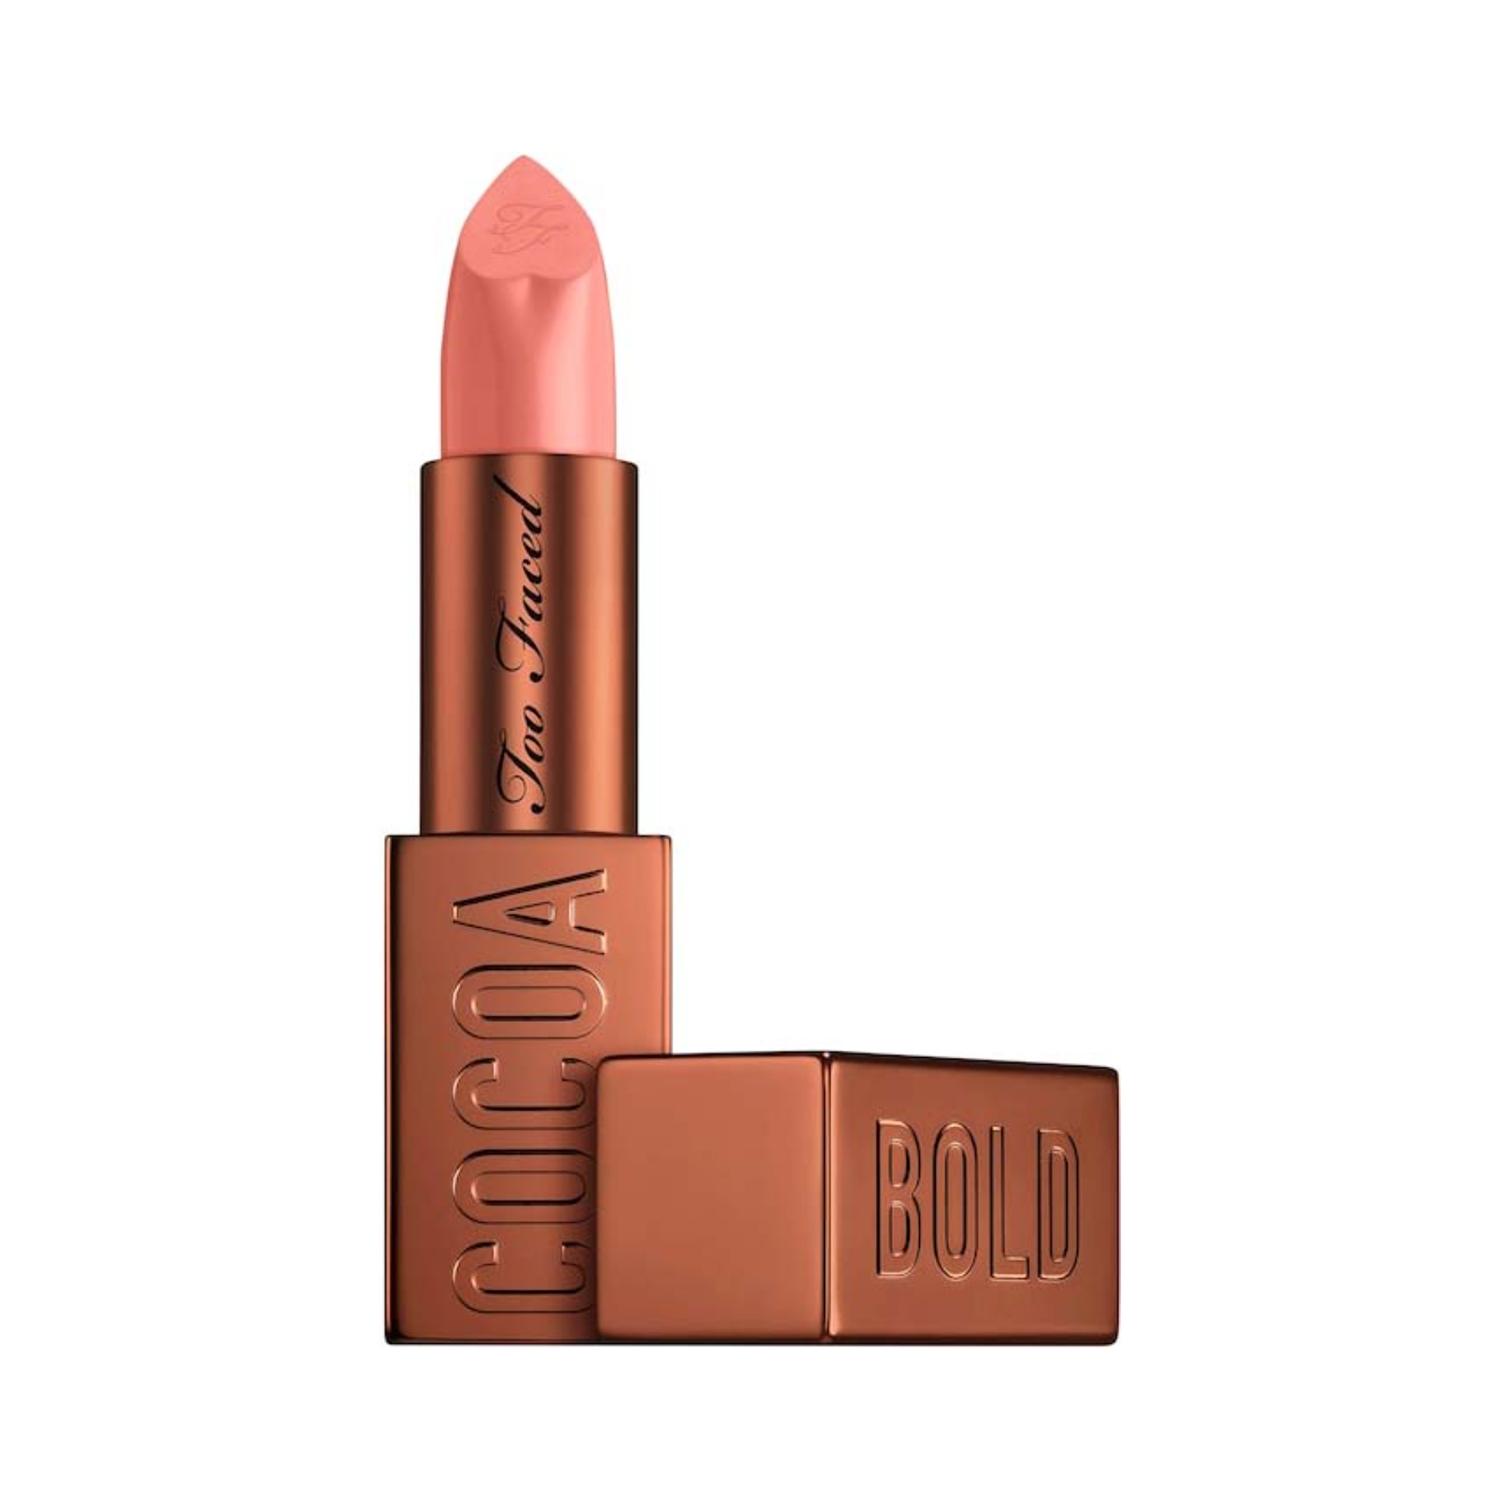 Too Faced Cocoa Bold Em-Power Cream Lipstick - Buttercream (3.3g)